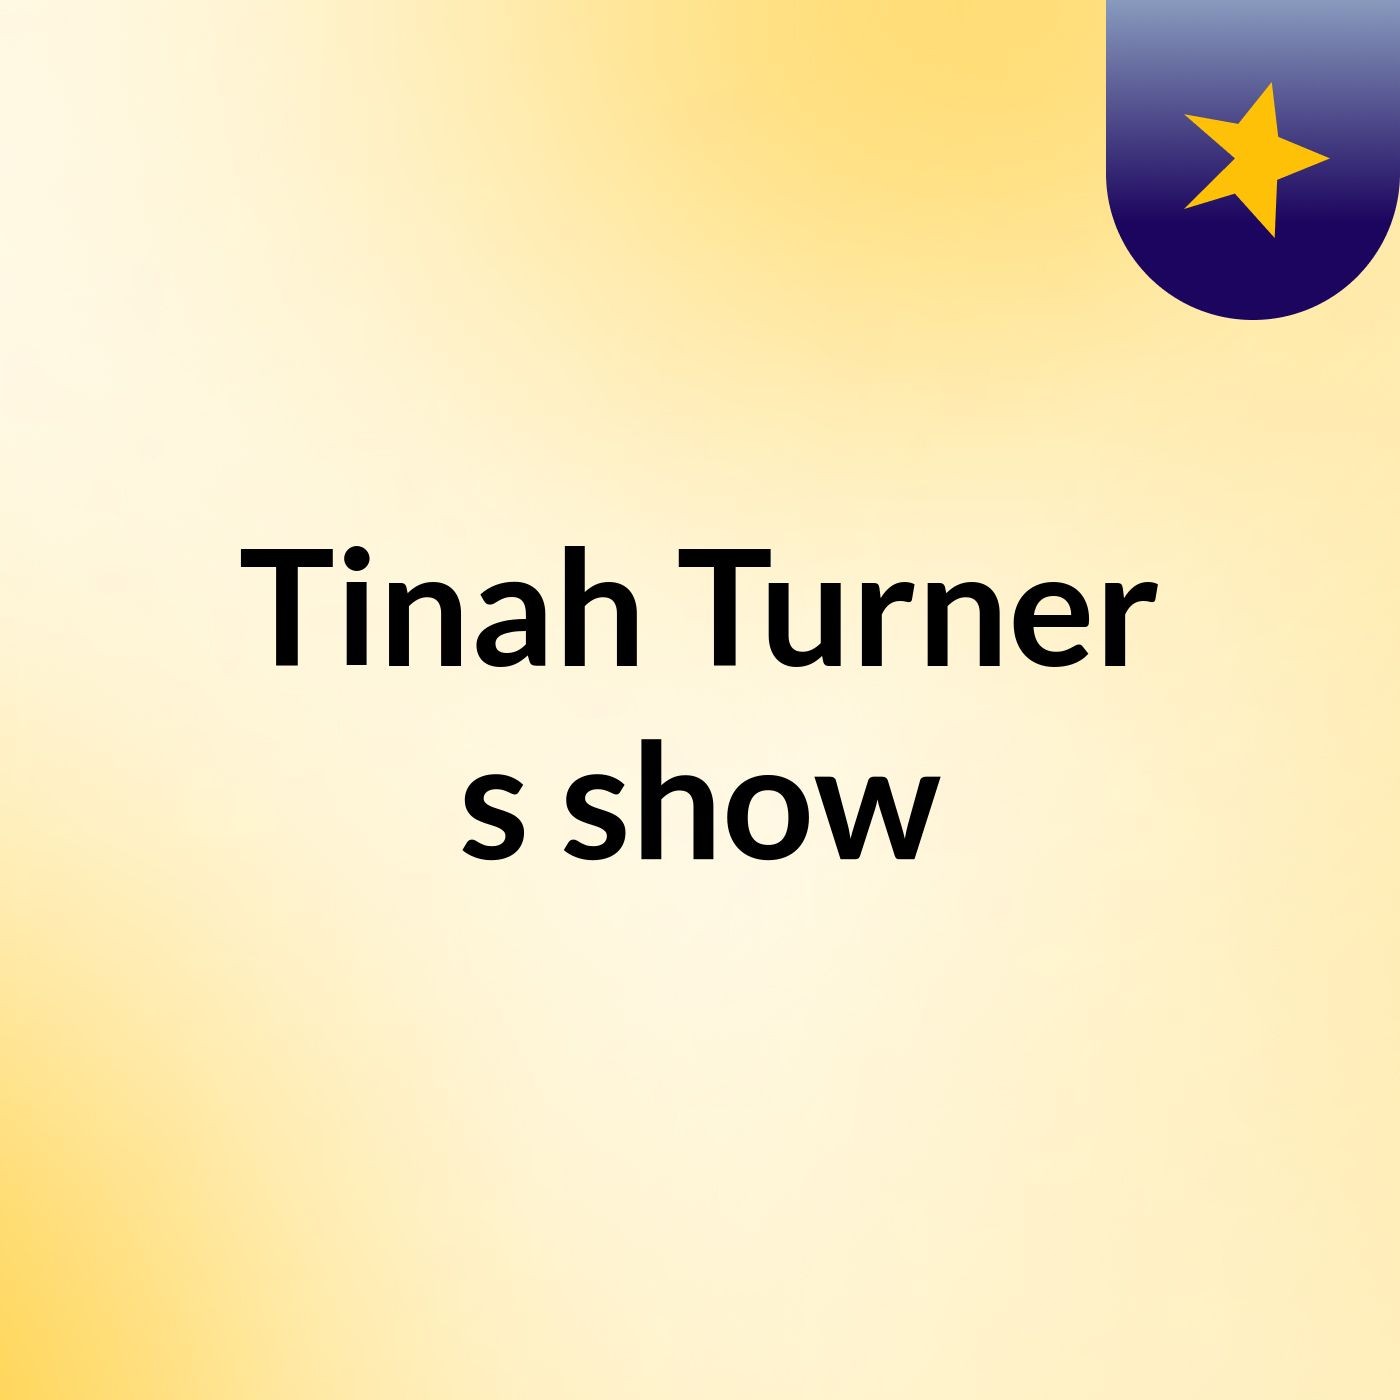 Tinah Turner's show